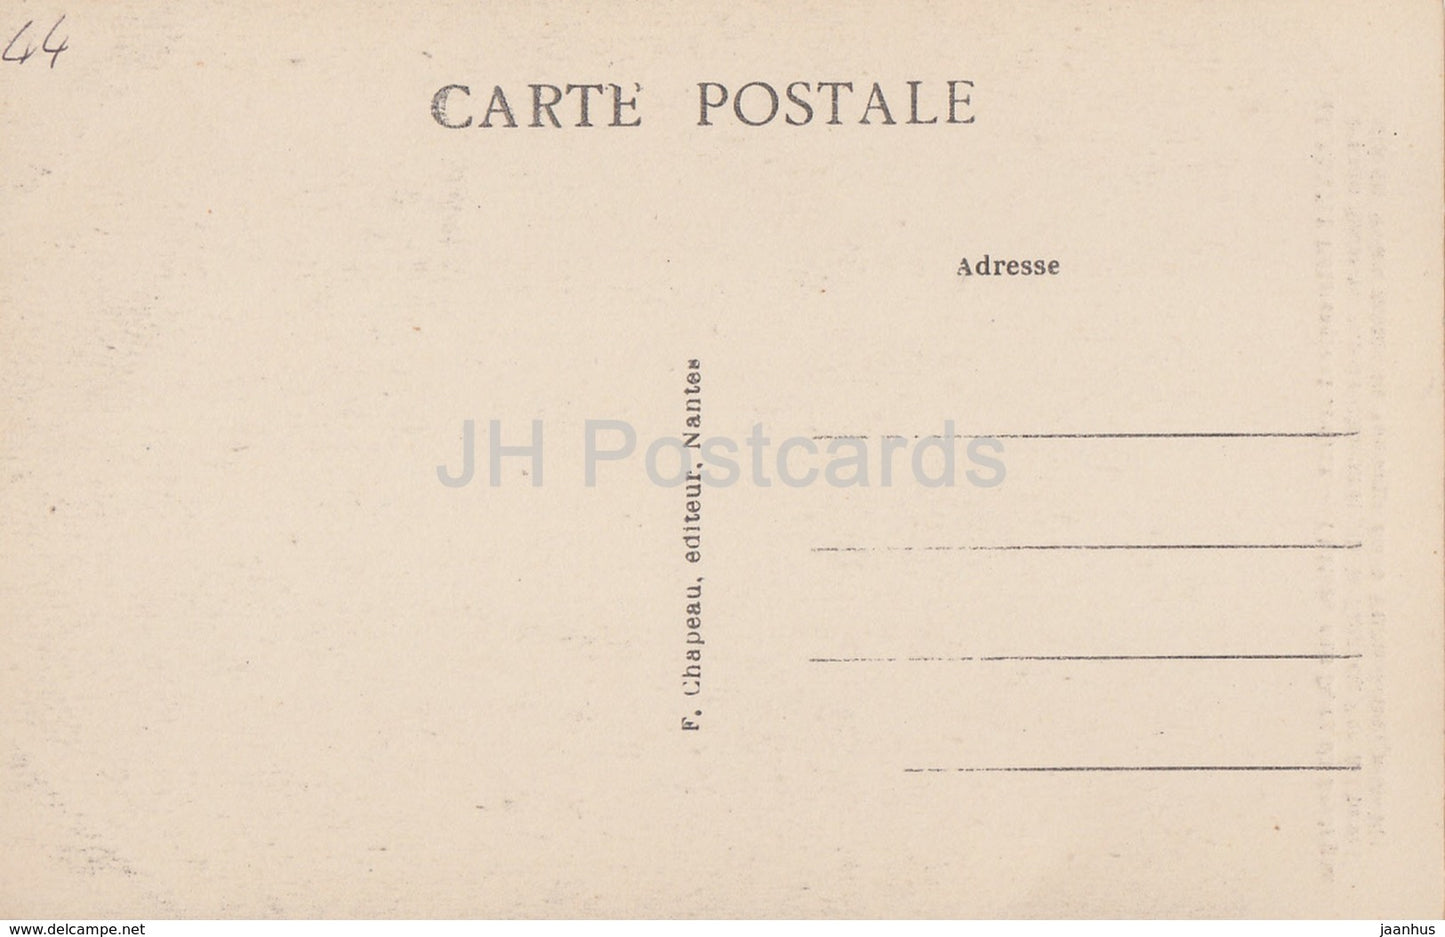 Nantes - Pittoresque et Curieux - Château des Ducs de Bretagne - château - 168 - carte postale ancienne - France - inutilisée